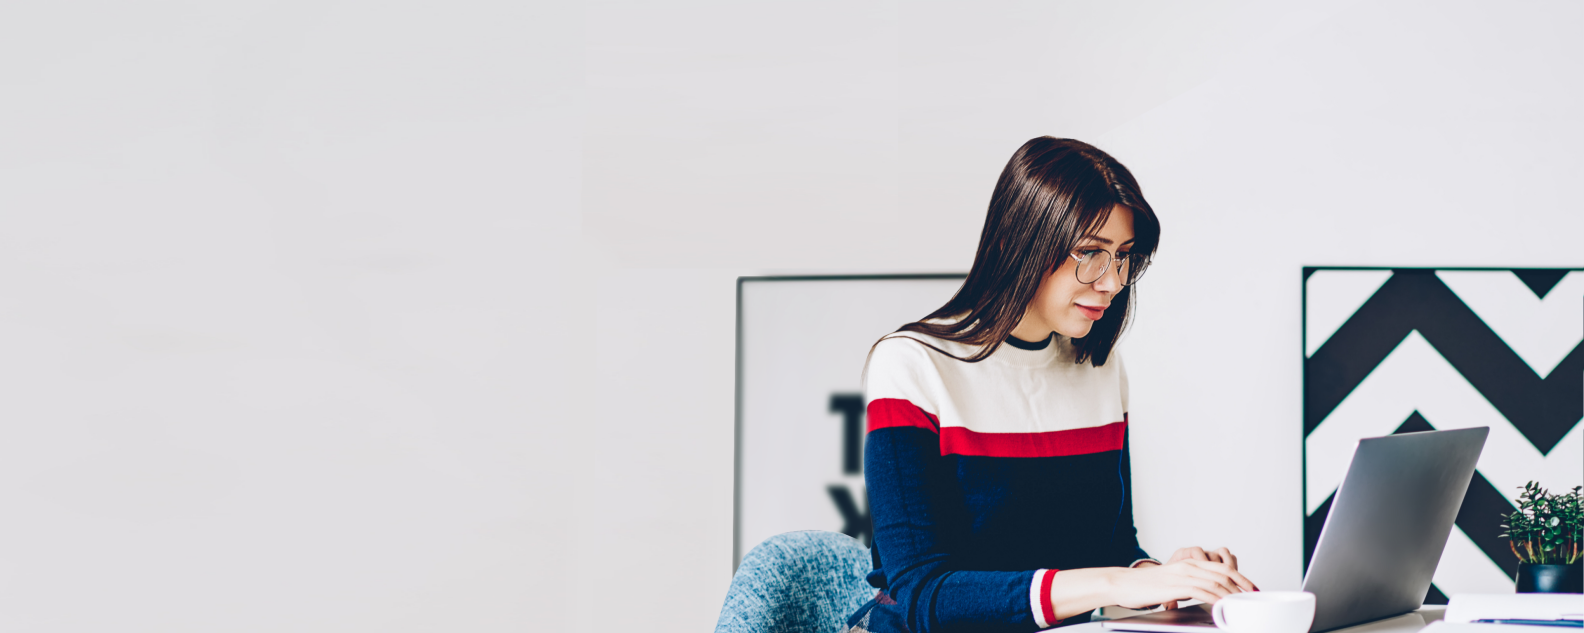 Uma jovem estudante usando óculos digitando informações para um trabalho de faculdade no teclado de um notebook moderno e usando Internet wireless em um apartamento elegante